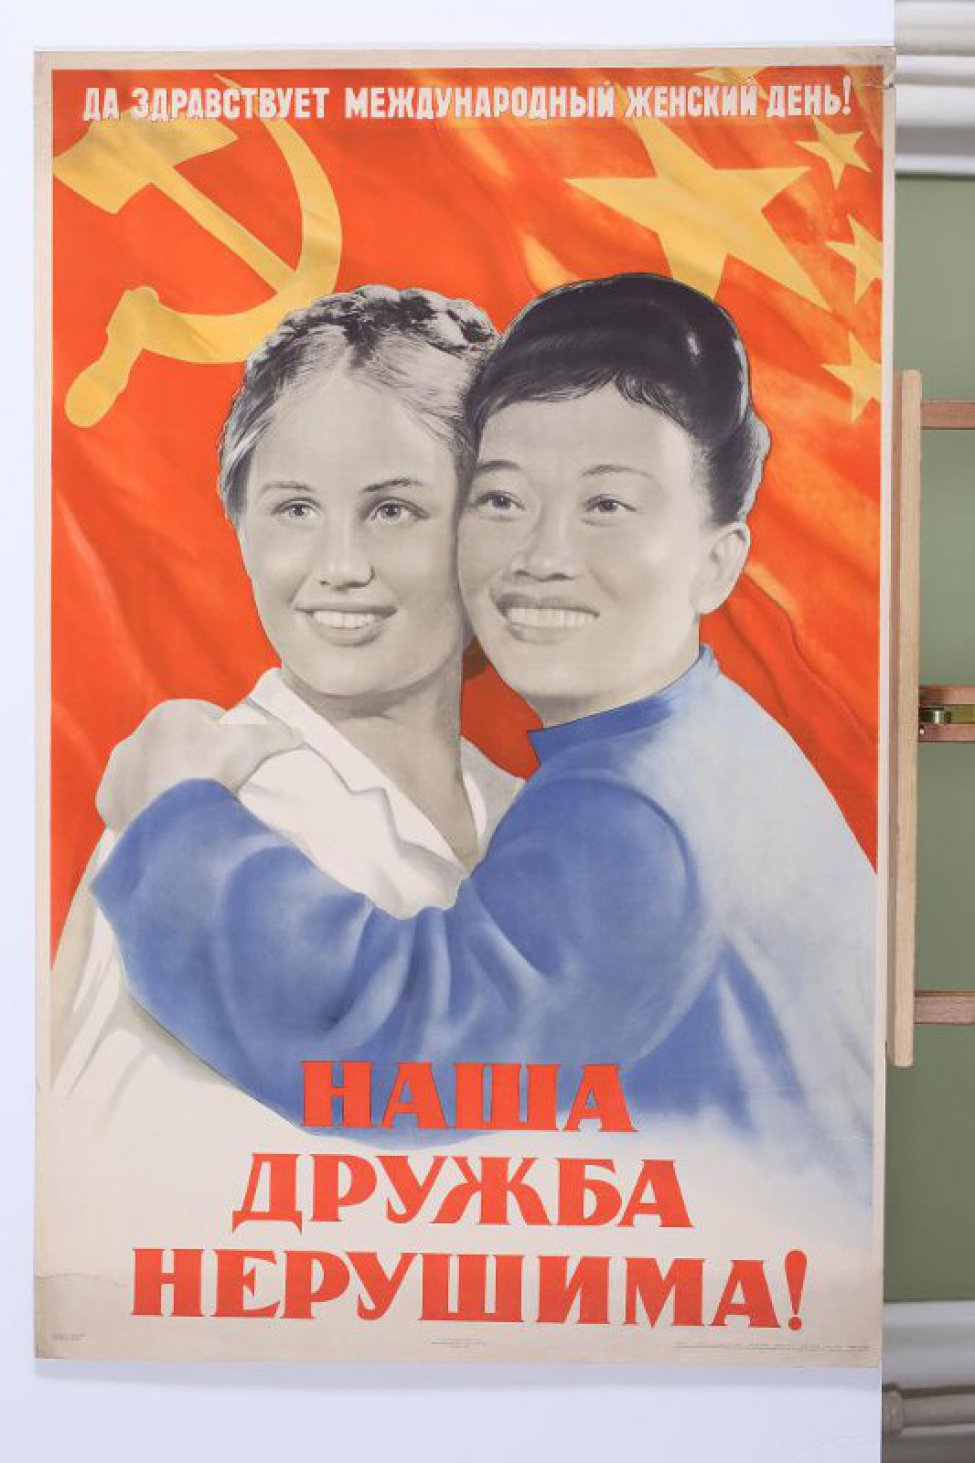 Изображена китайская женщина в синей одежде, обнимающая русскую женщину в белой кофте. Наверху текст: " Да здравствует международный женский день!"